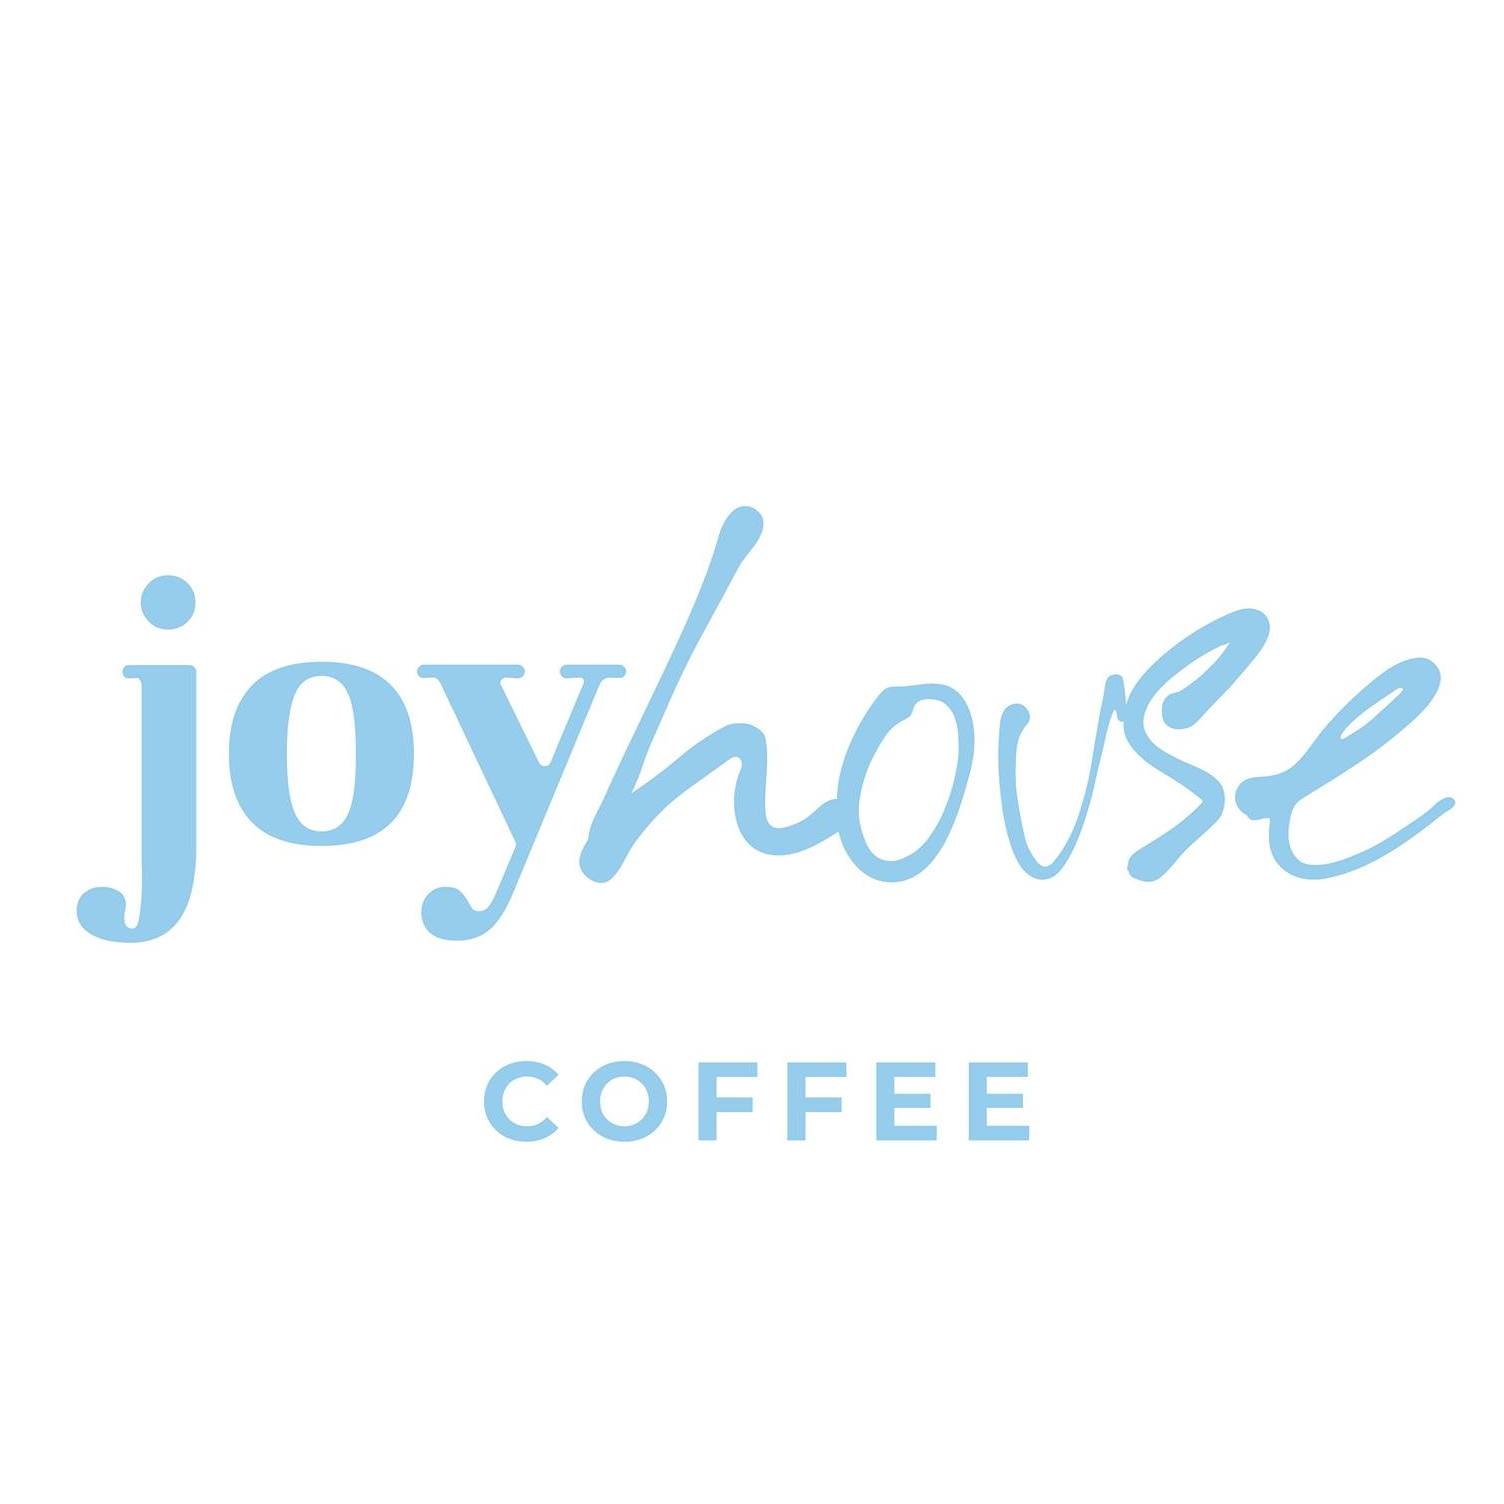 Joyhouse.jpg Image